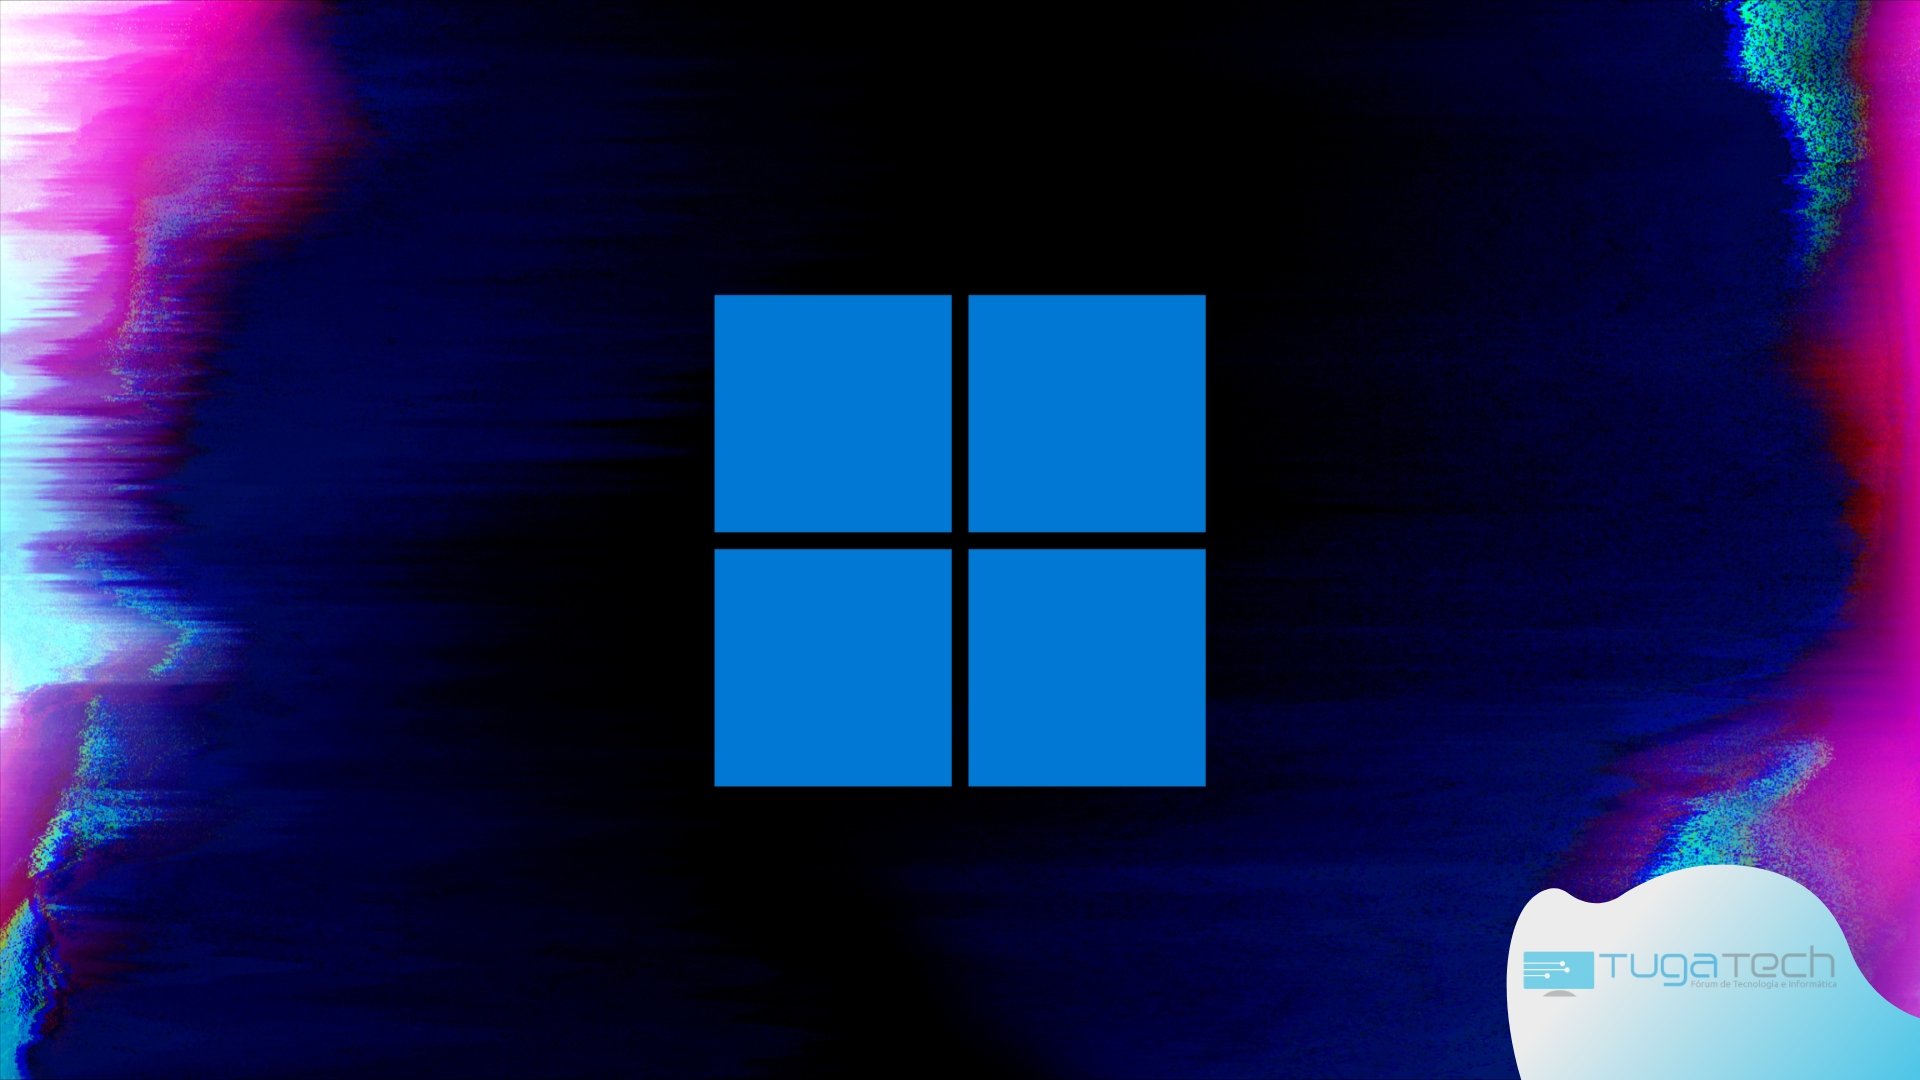 Windows 11 com falhas